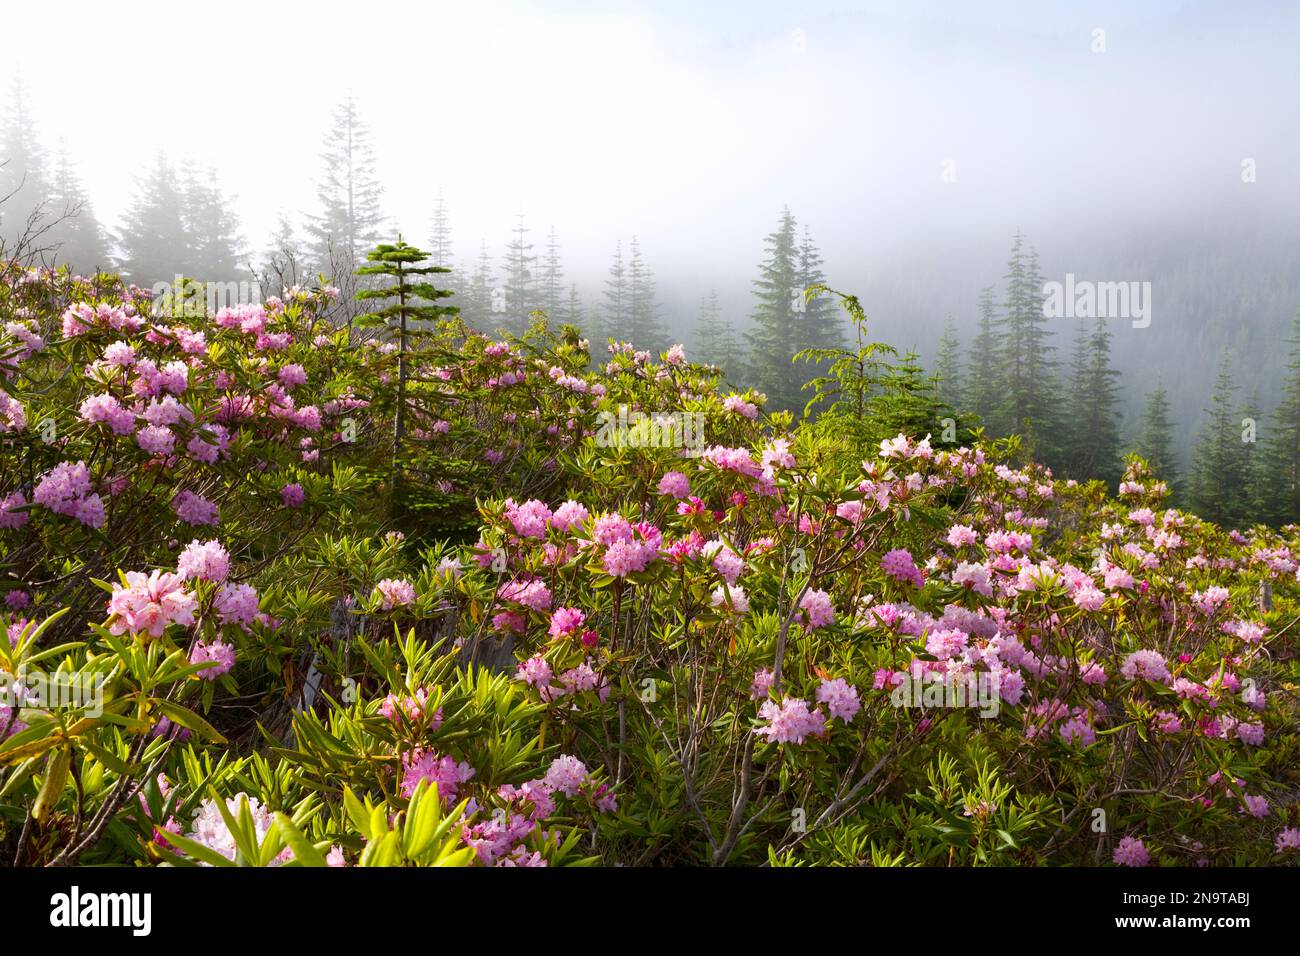 Rhododendron-Büsche und Morgennebel am Lolo Pass, Mount Hood in den Oregon Cascades; Oregon, Vereinigte Staaten von Amerika Stockfoto